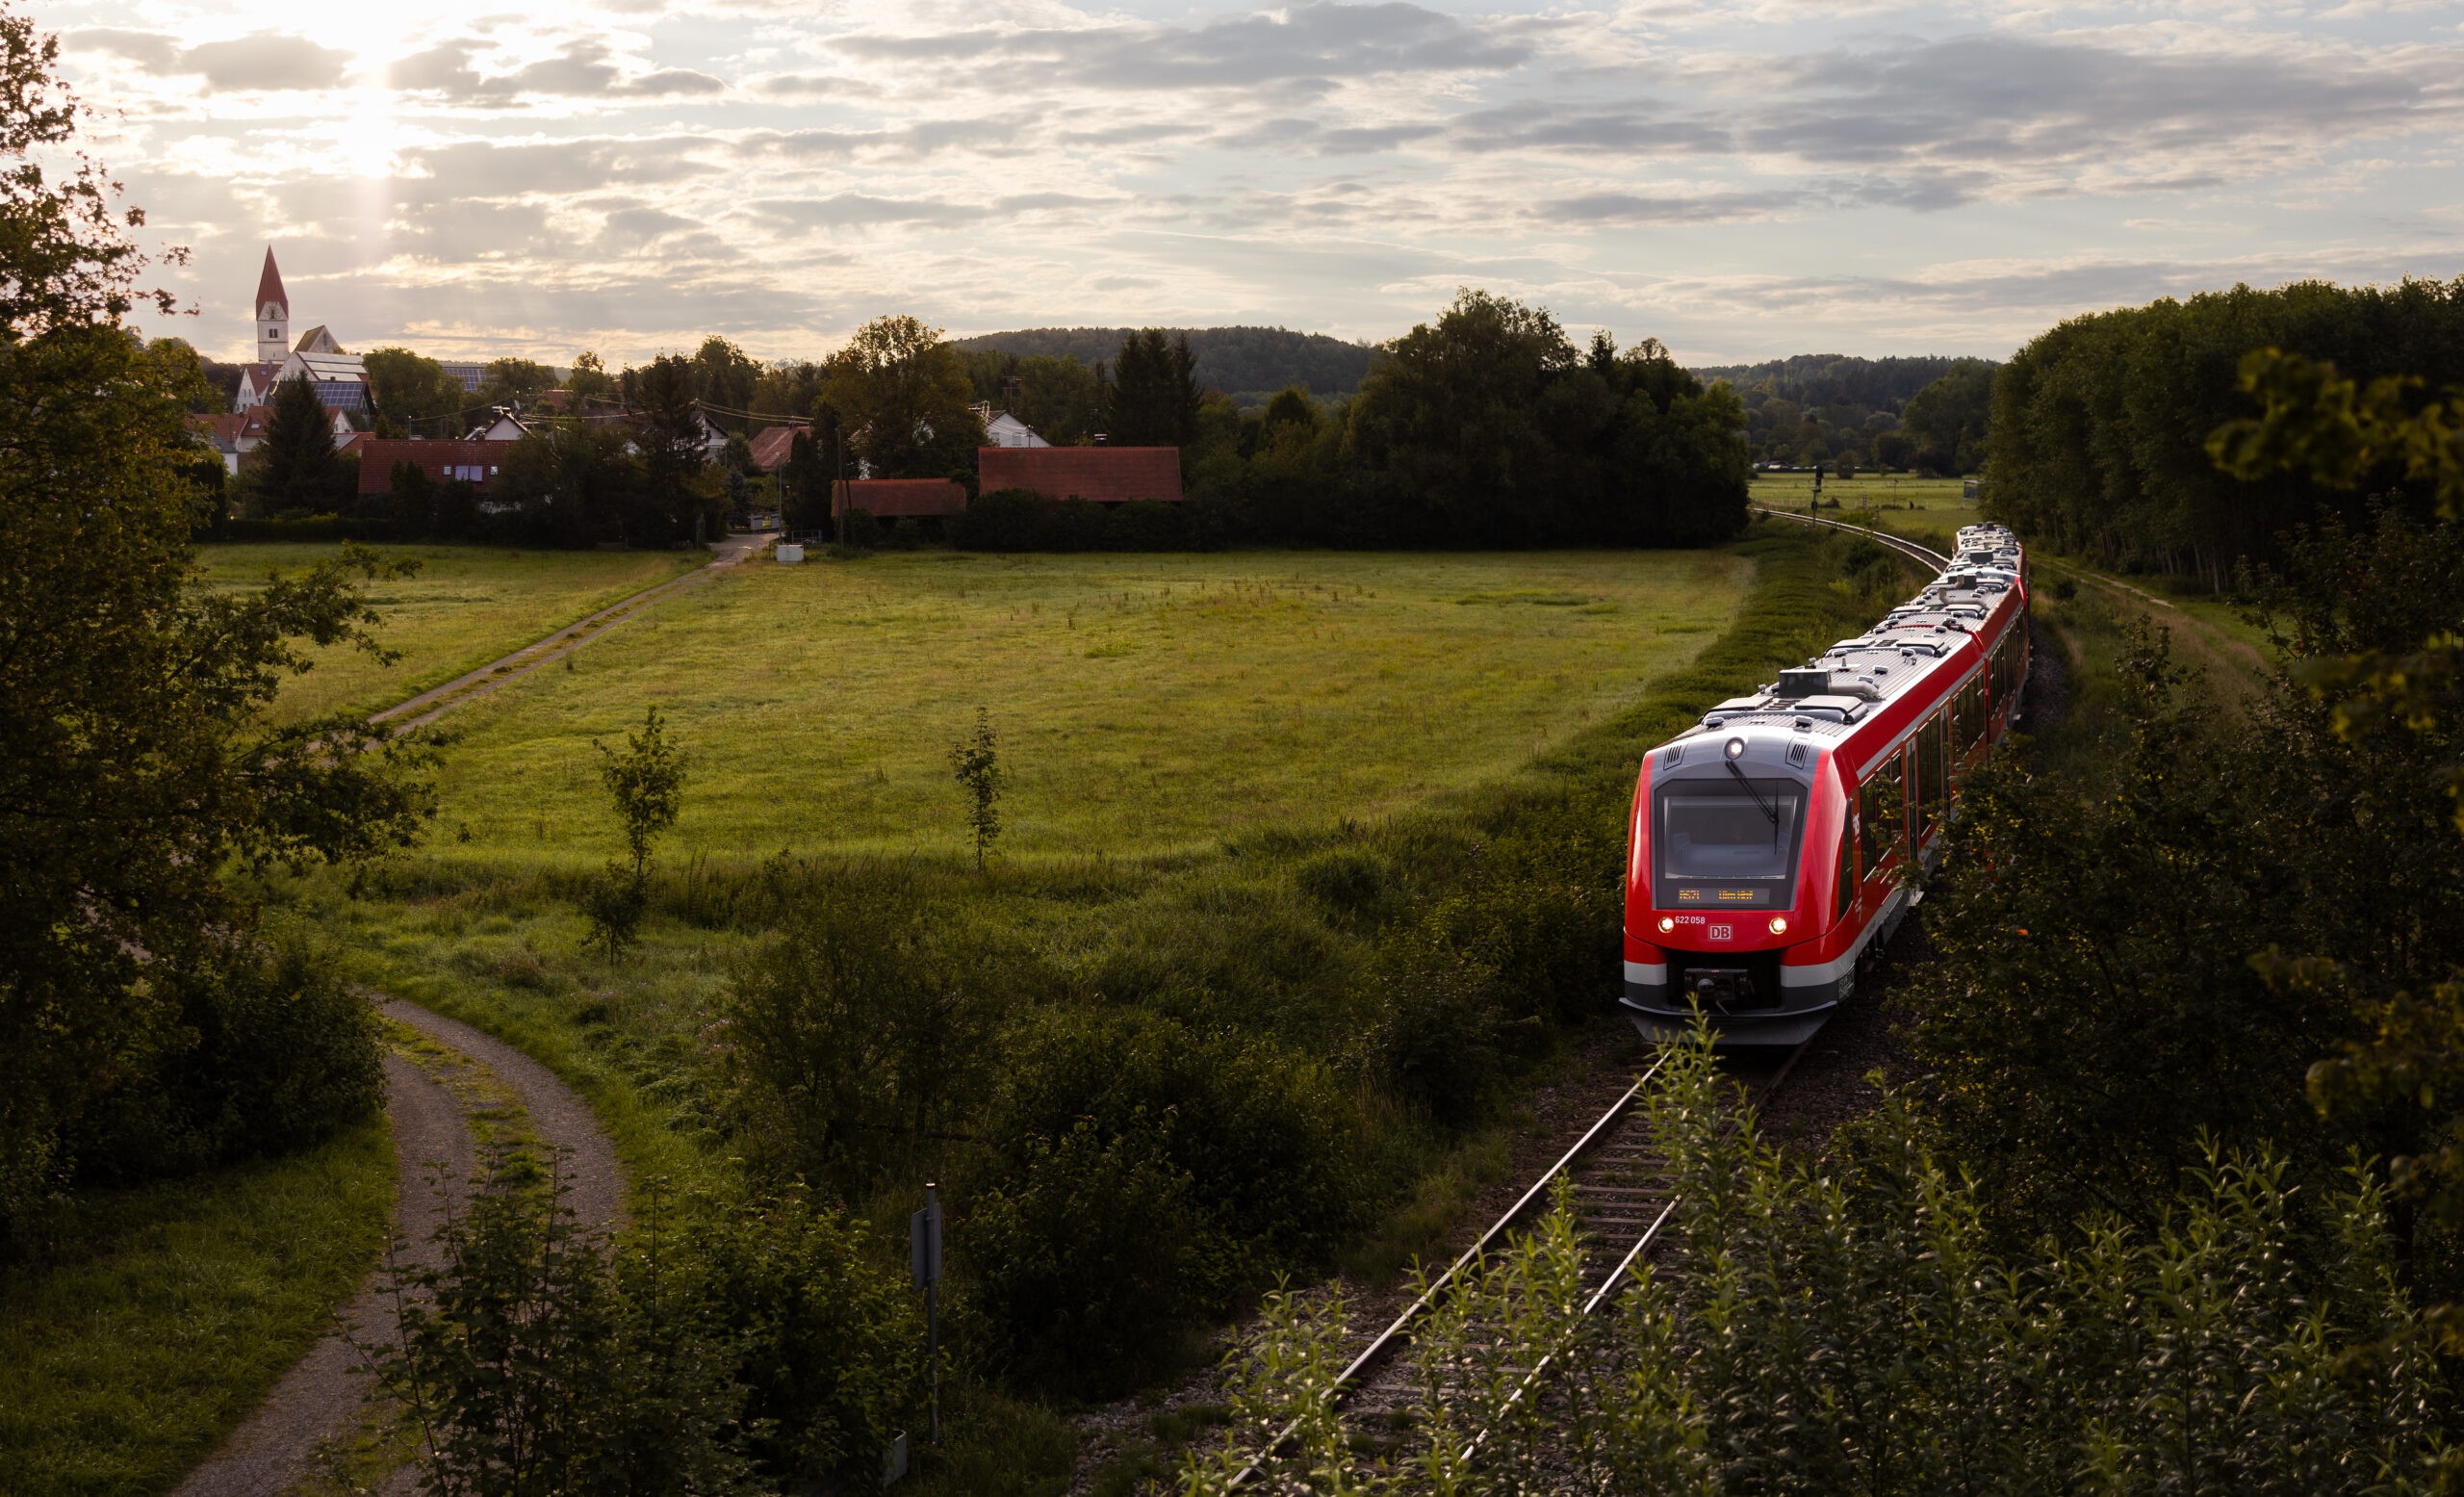 Am 14. Dezember 2013 wurde nach langer Stilllegung die Bahnstrecke zwischen Senden und Weißenhorn wieder in Betrieb genommen. Am 15. Dezember 2013 fuhren zum ersten Mal seit 1966 wieder Nahverkehrszüge.